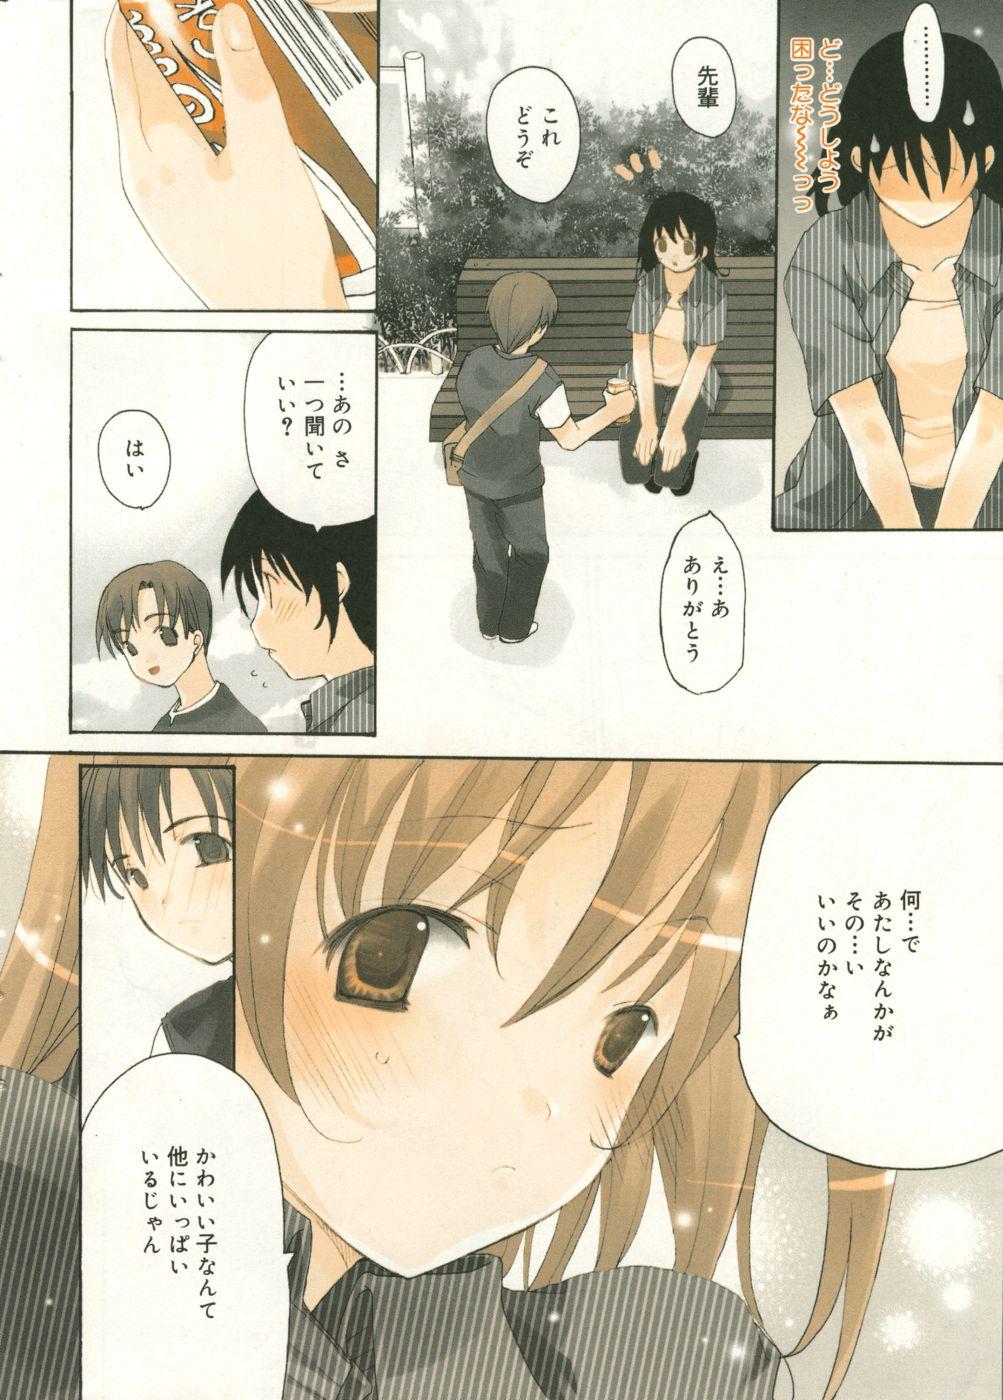 18 Year Old Manga Bangaichi 2005-09 Vol. 178 Hot Whores - Page 9